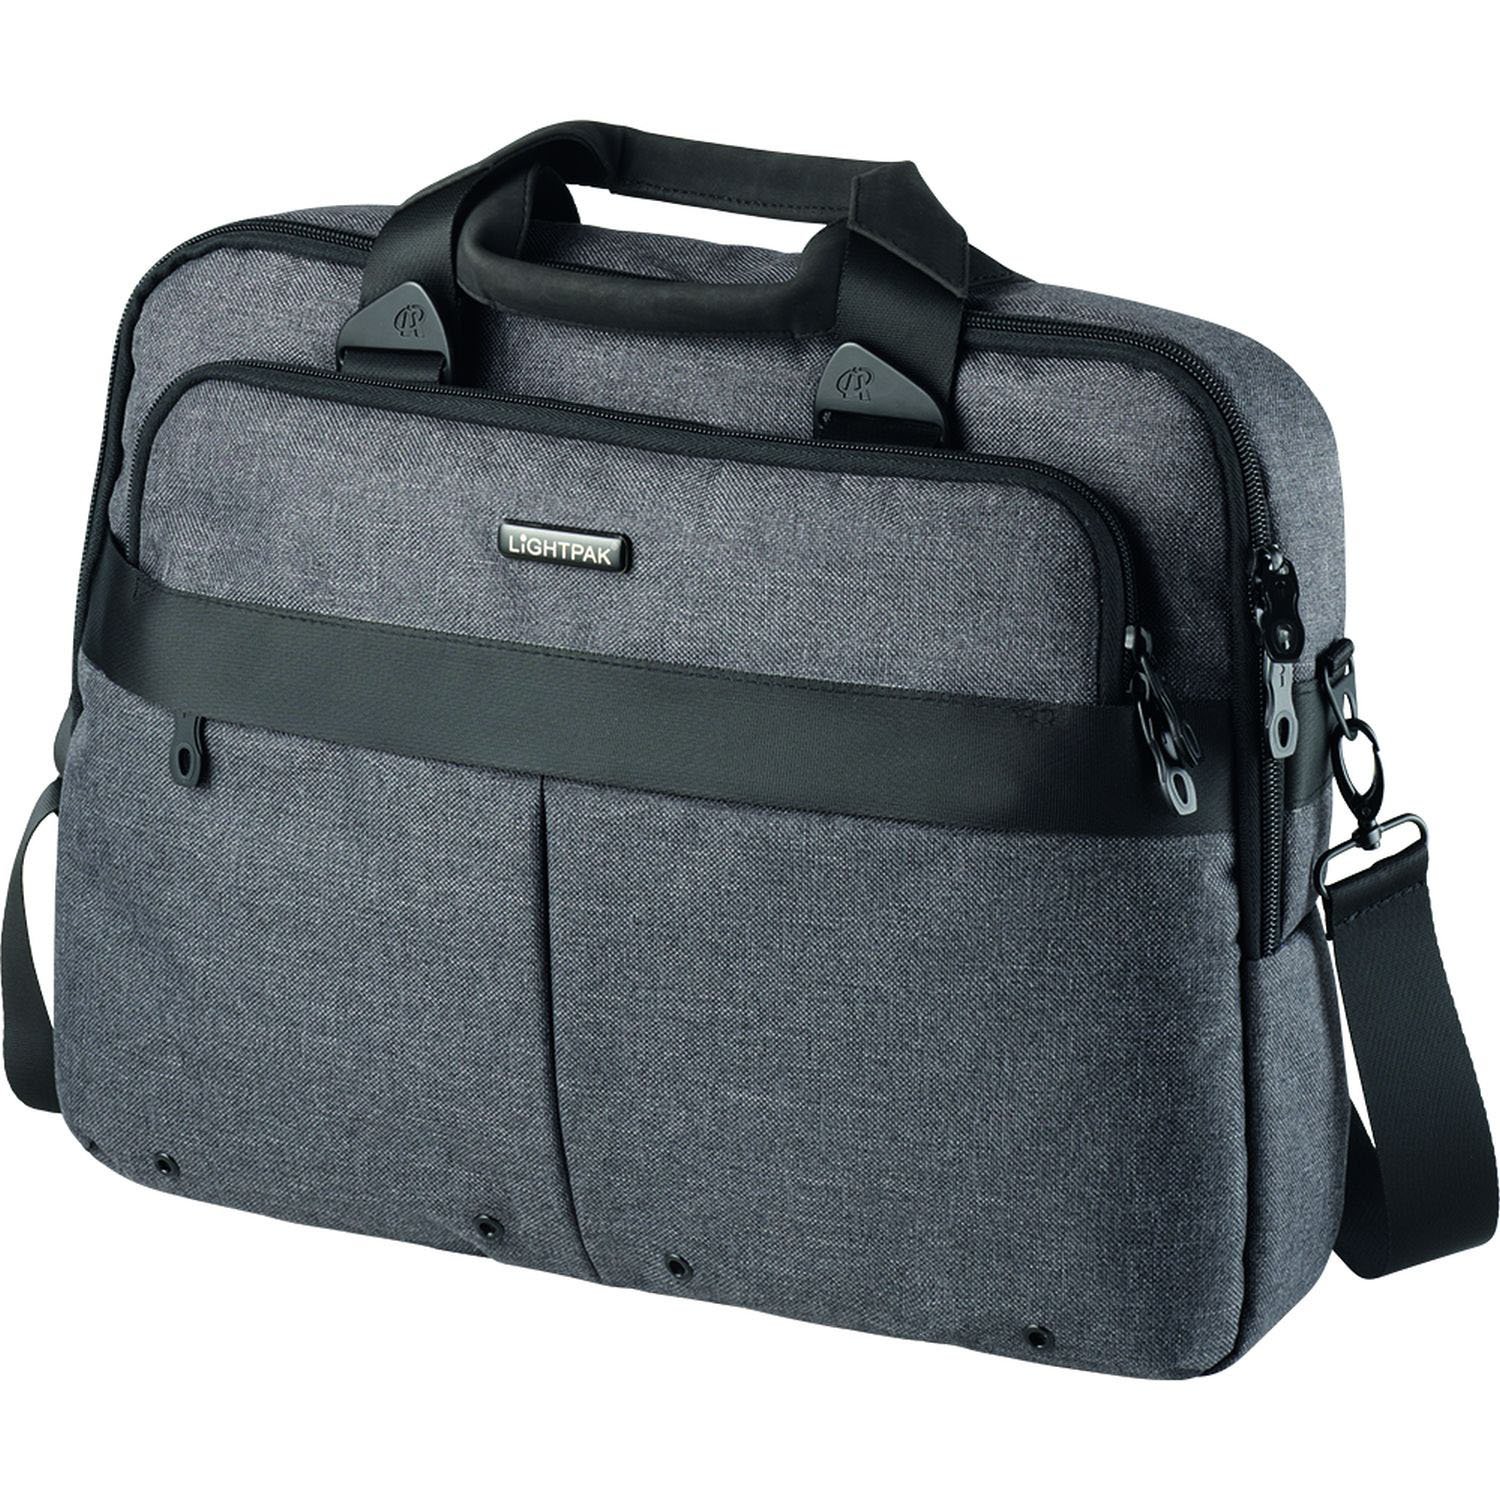 LIGHTPAK 46166 Laptoptasche Wookie, Notebooktasche für Laptops mit Einer Größe von bis zu 17 Zoll, Schultertasche mit Reißverschlusstaschen, Tasche aus Polyester, ca. 31 x 40 x 7 cm, grau